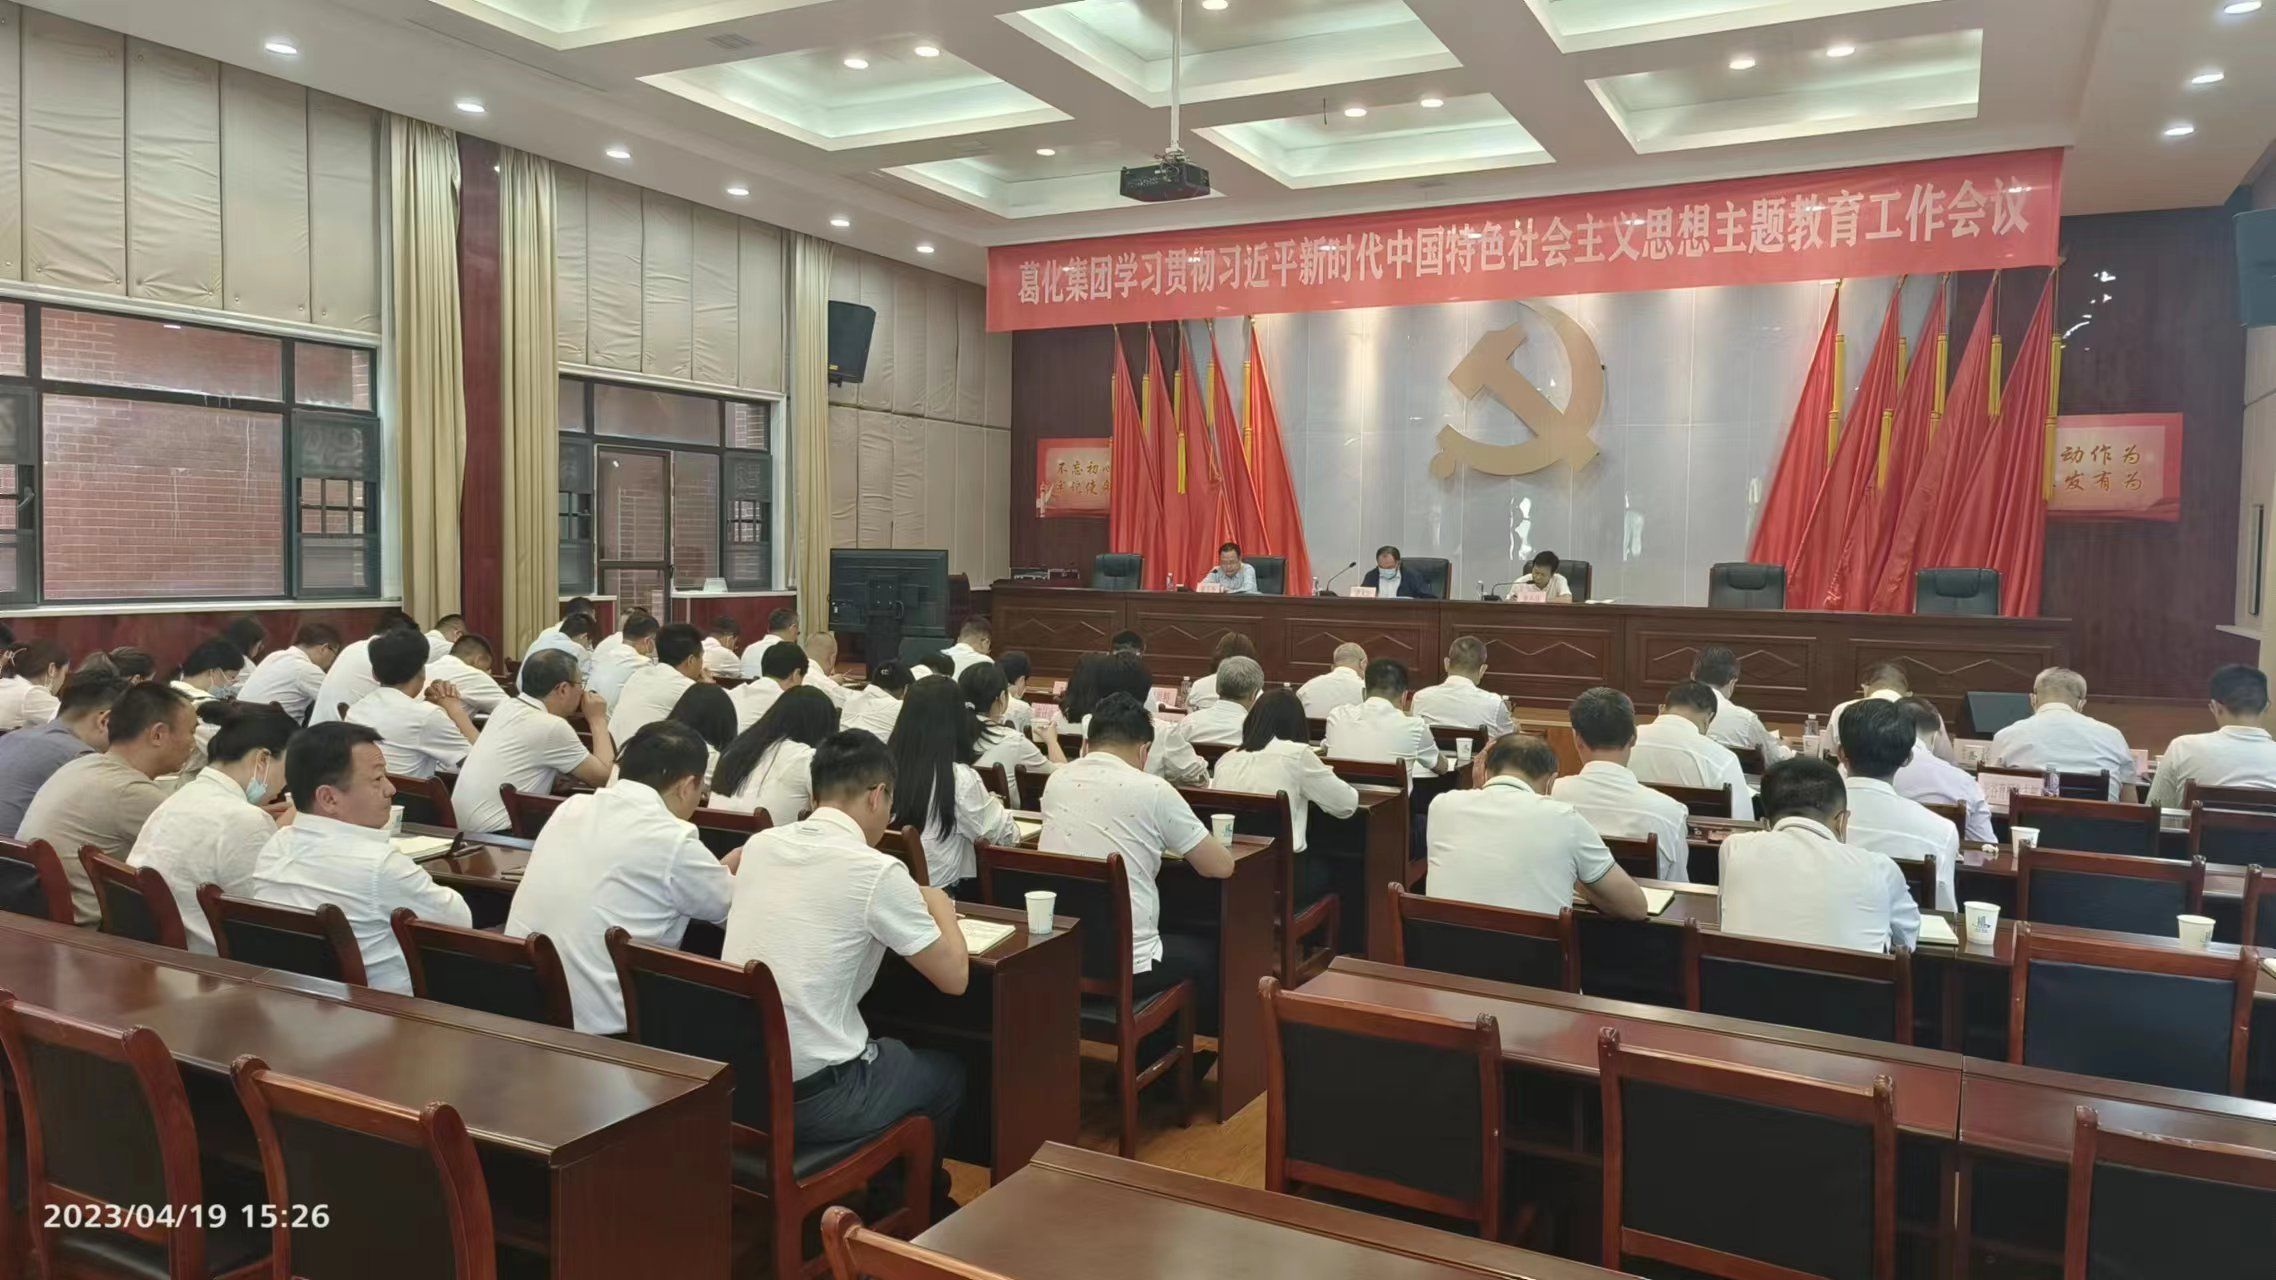 葛化集团召开学习贯彻习近平新时代中国特色社会主义思想主题教育工作会议